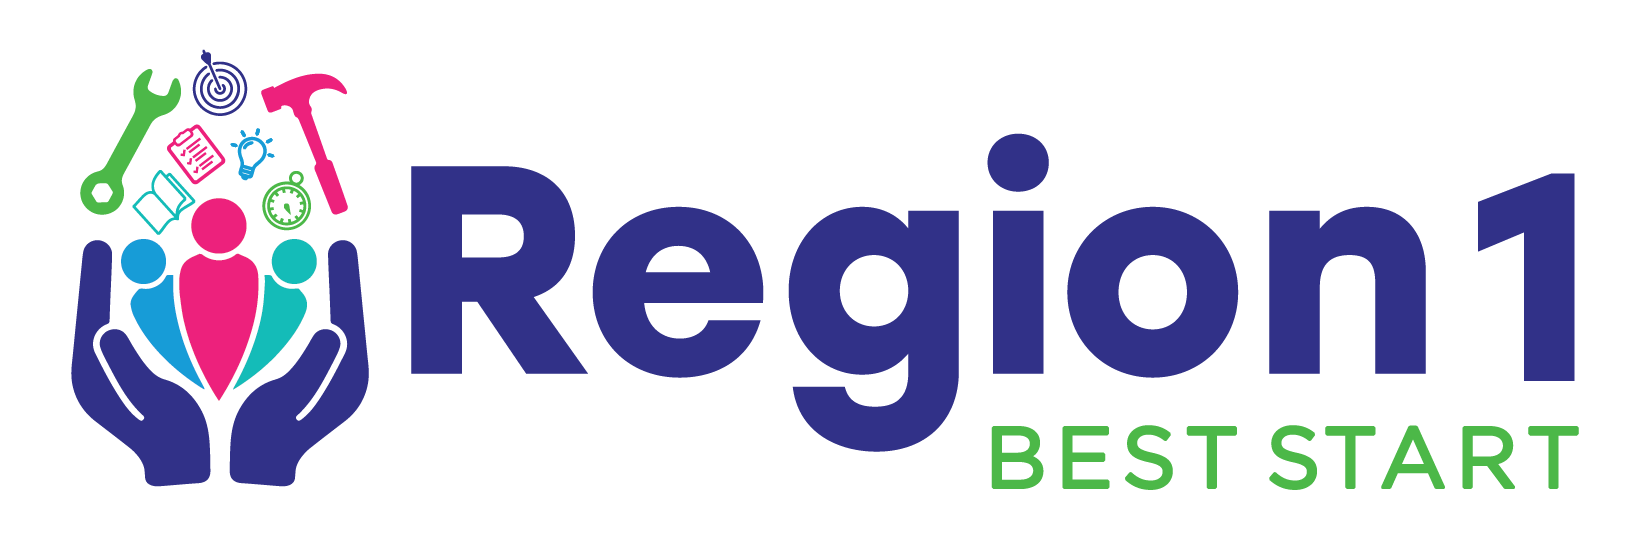 Best Start Region 1